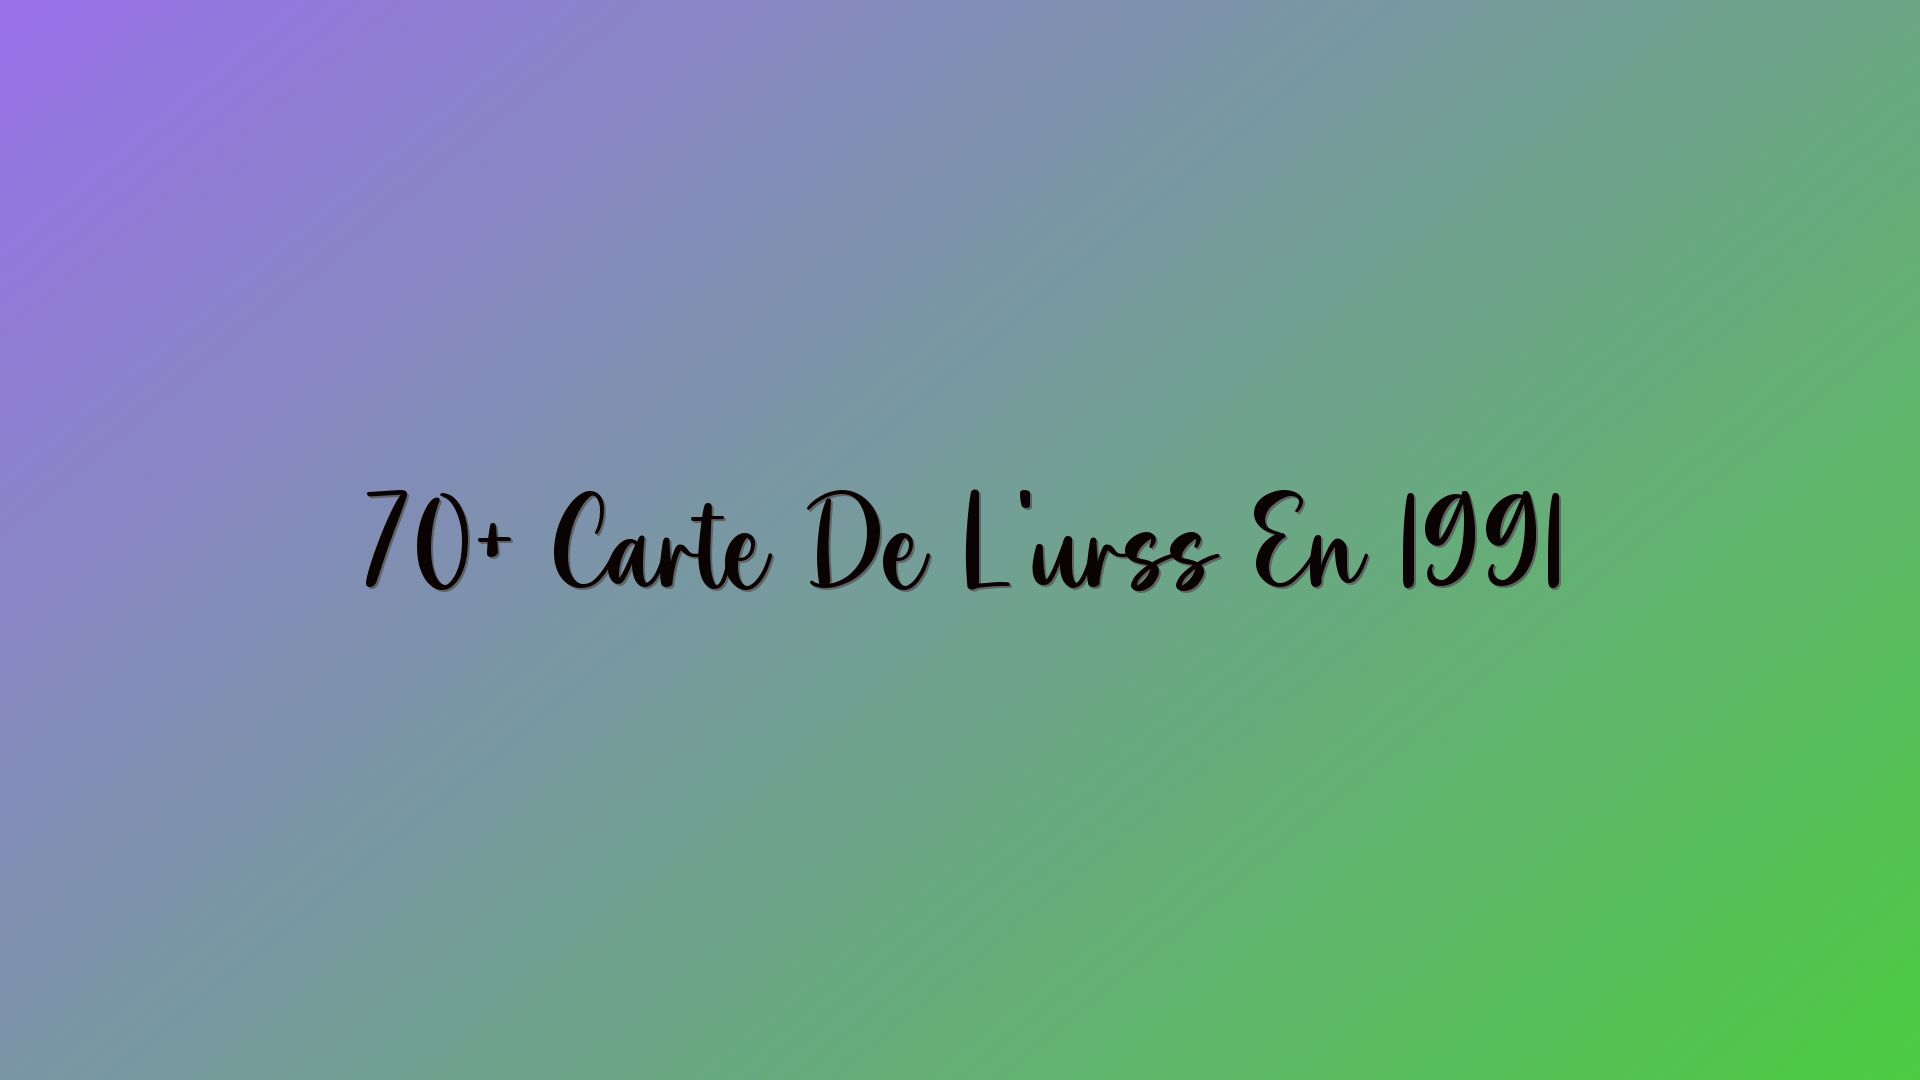 70+ Carte De L’urss En 1991